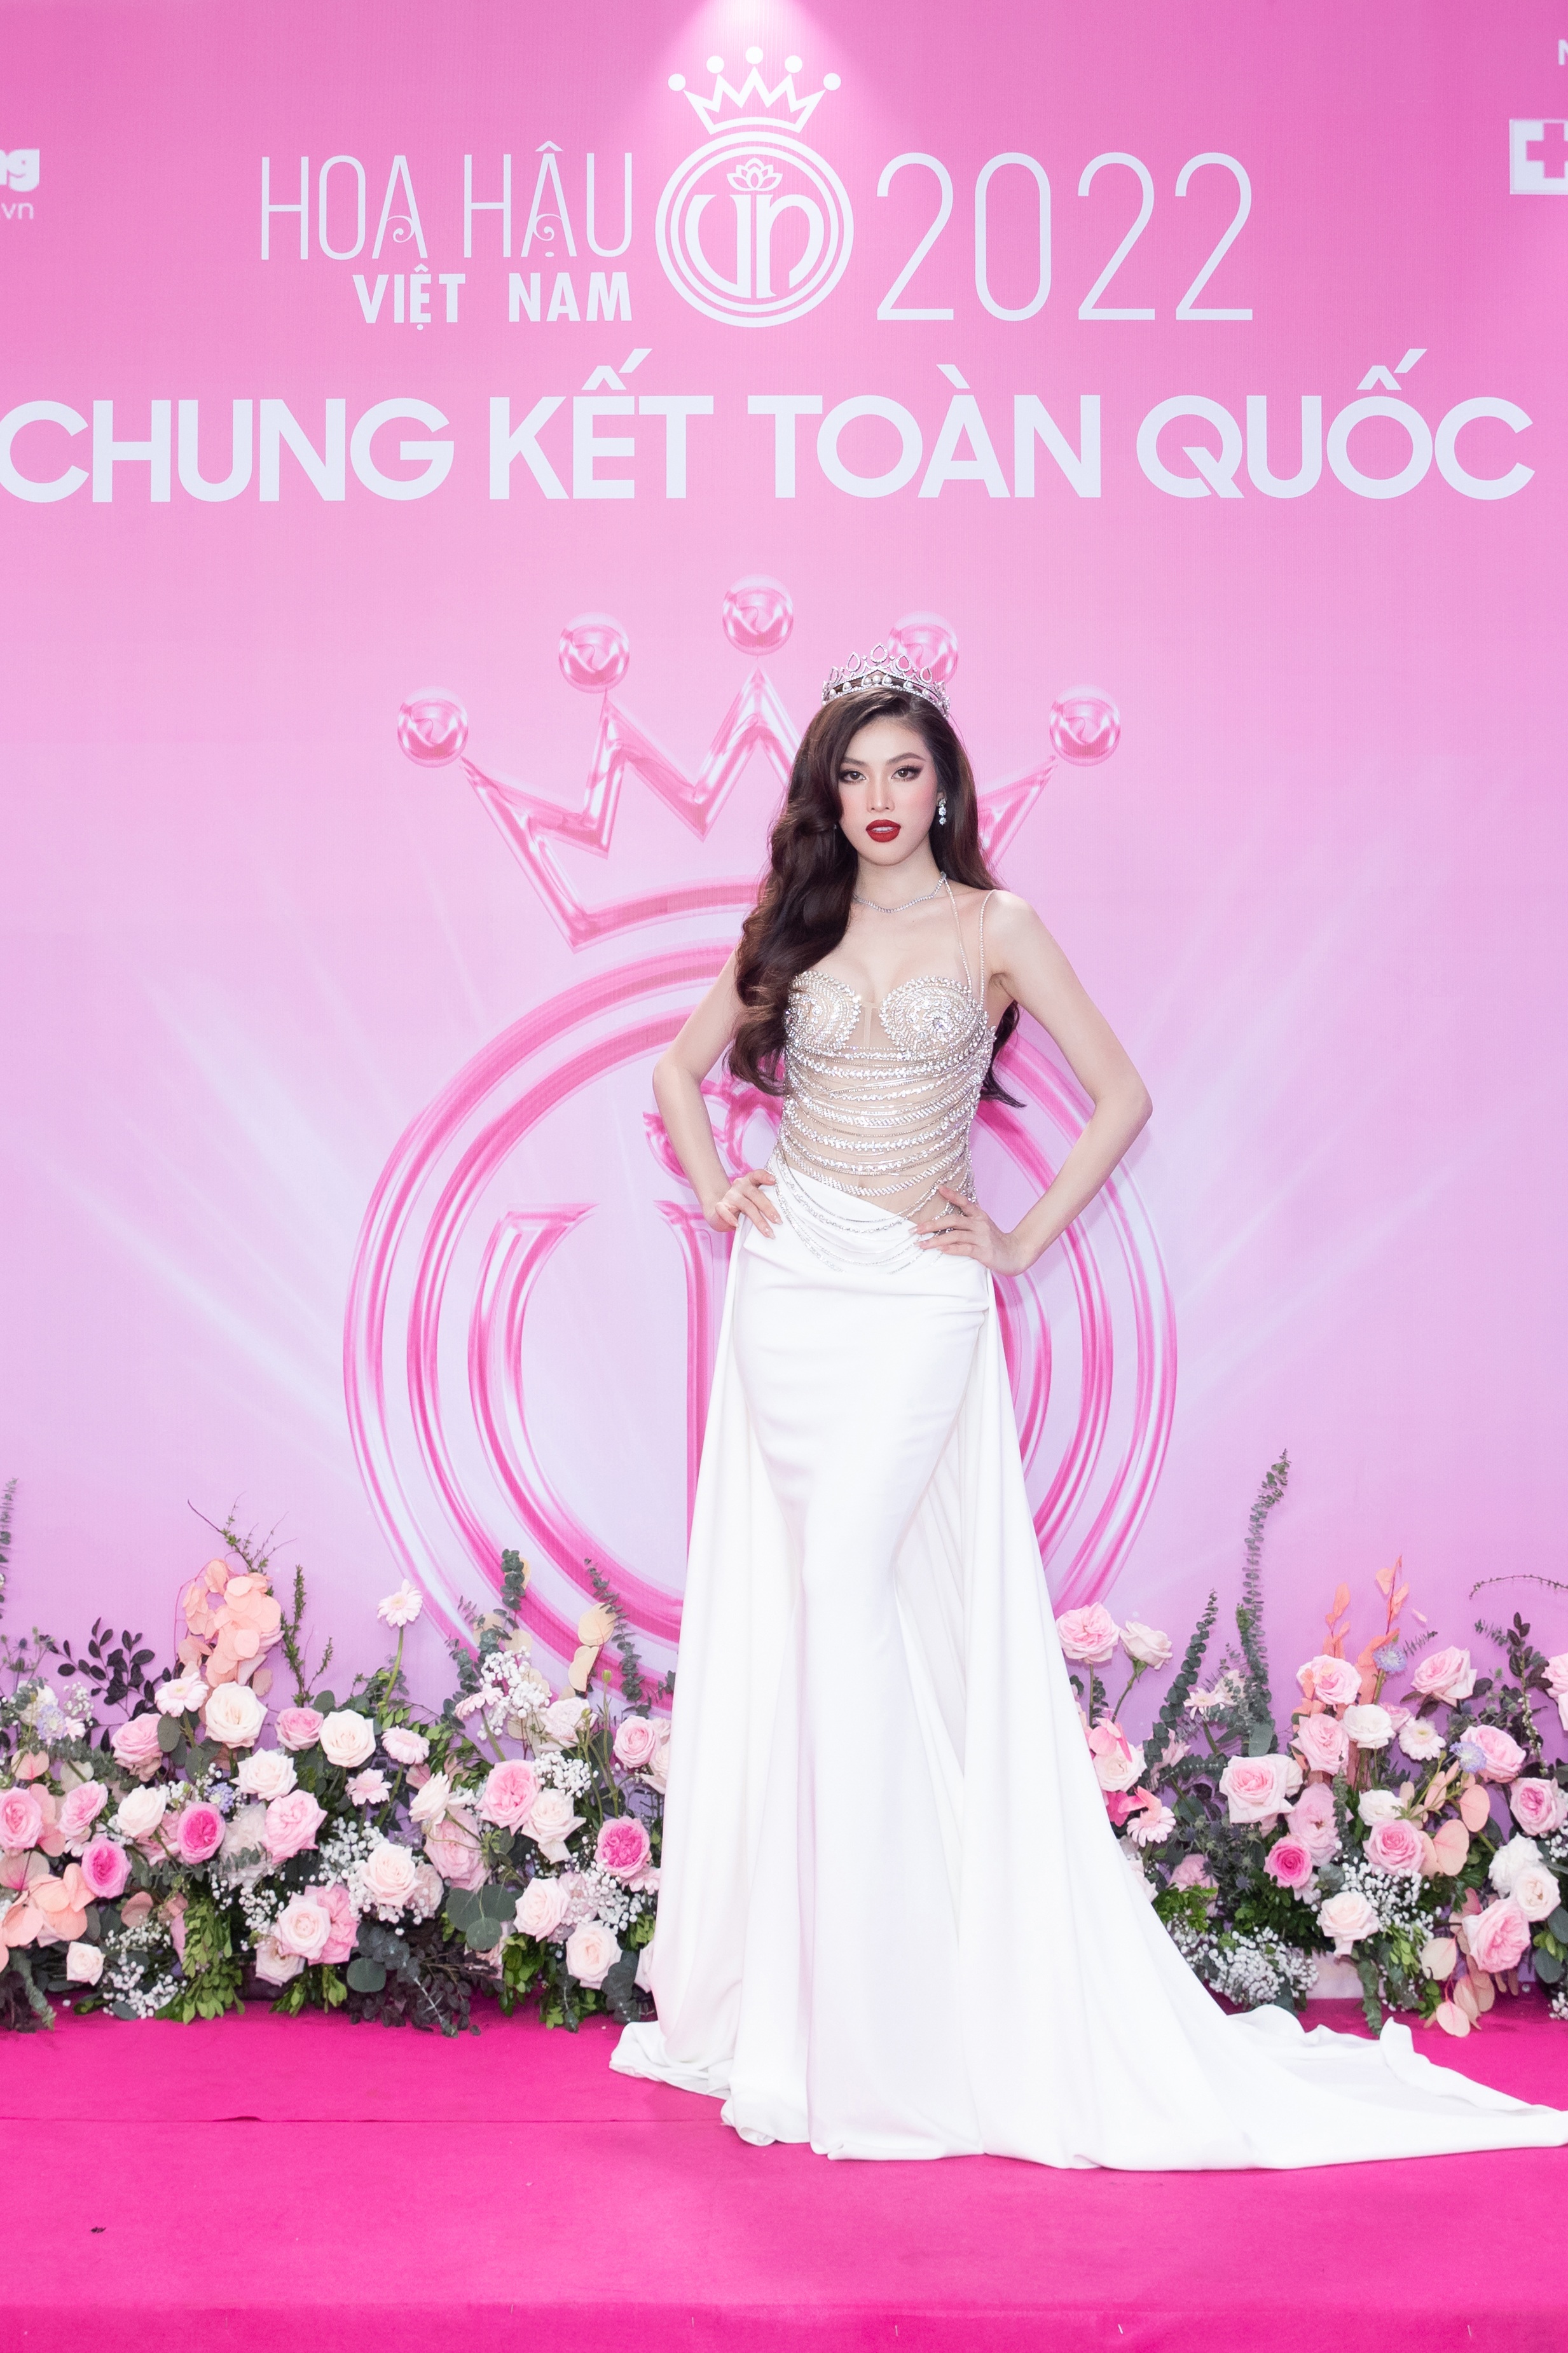 Chung kết Hoa hậu Việt Nam 2022: Tân Hoa hậu chính thức gọi tên Huỳnh Thị Thanh Thuỷ - 49